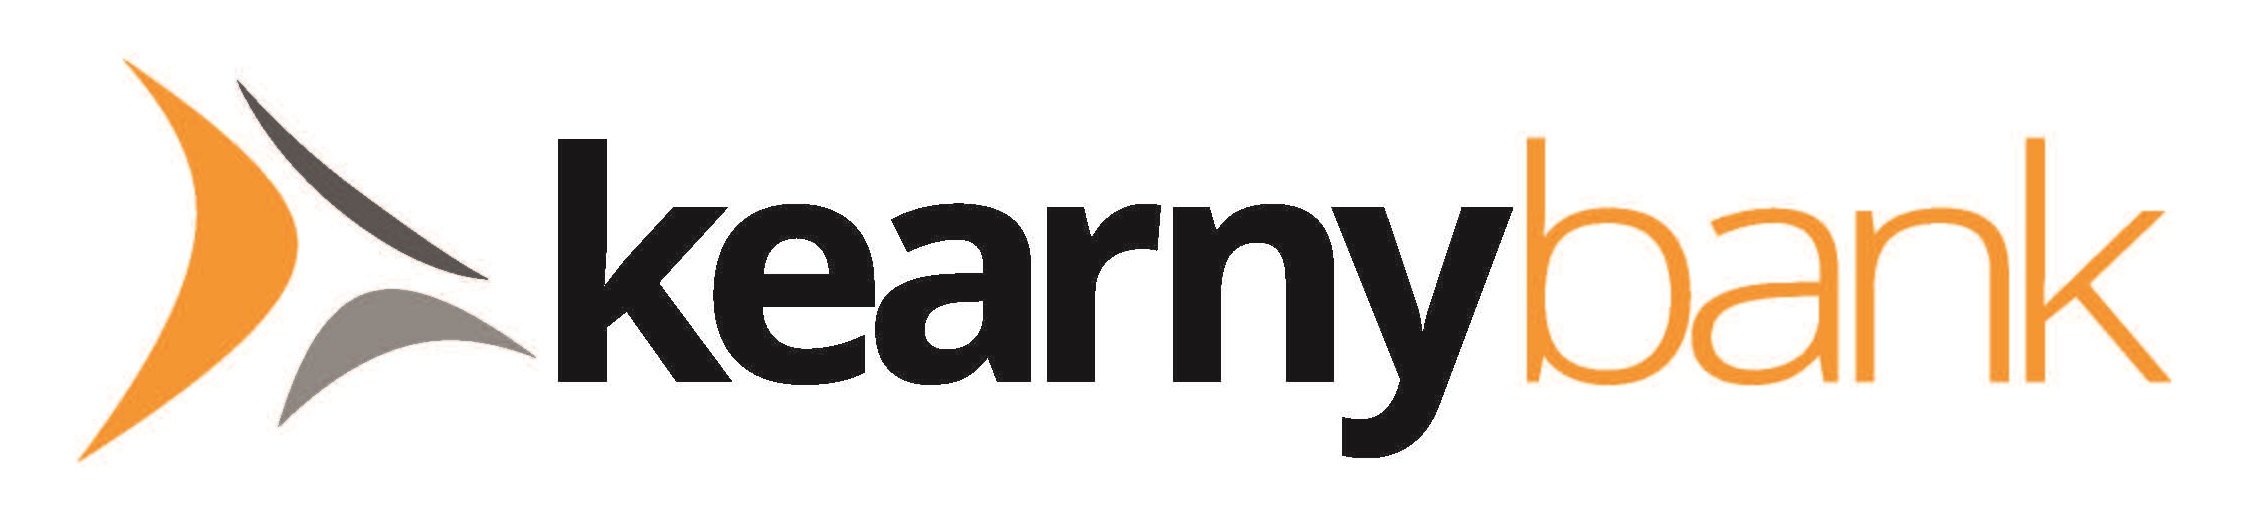 Kearny Bank logo